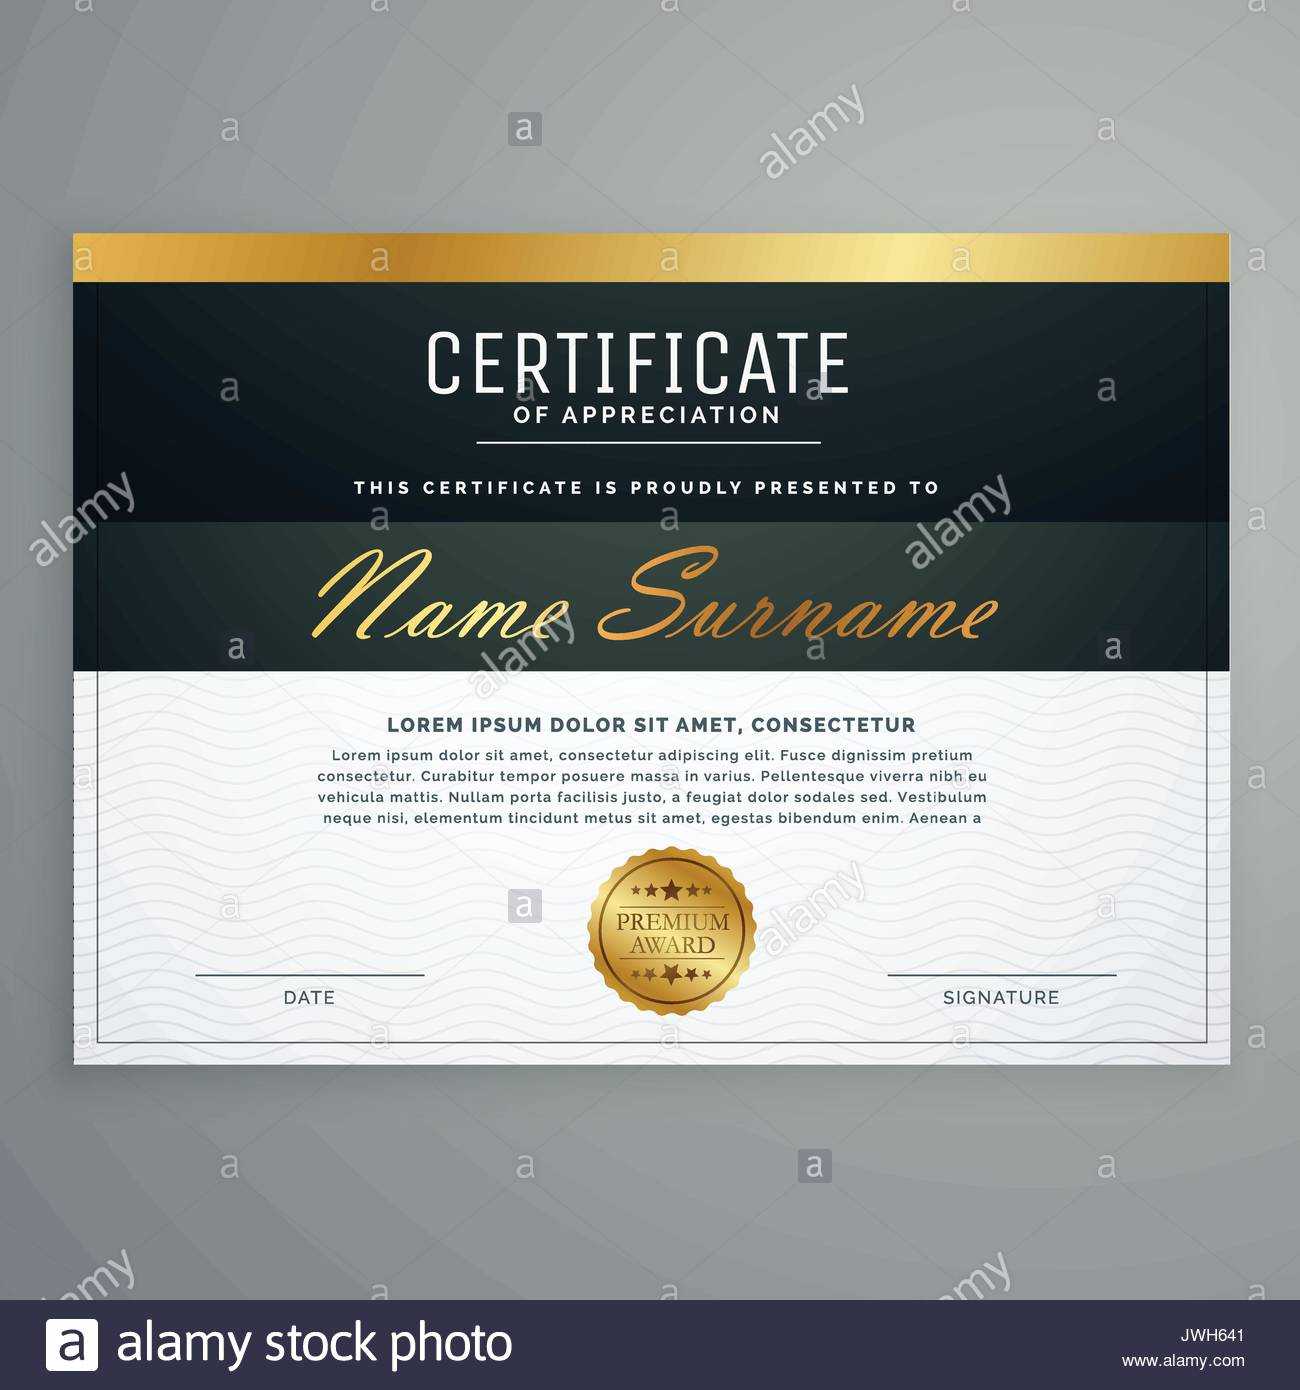 Premium Certificate Design. Diploma Award Vector Template Within Award Certificate Design Template